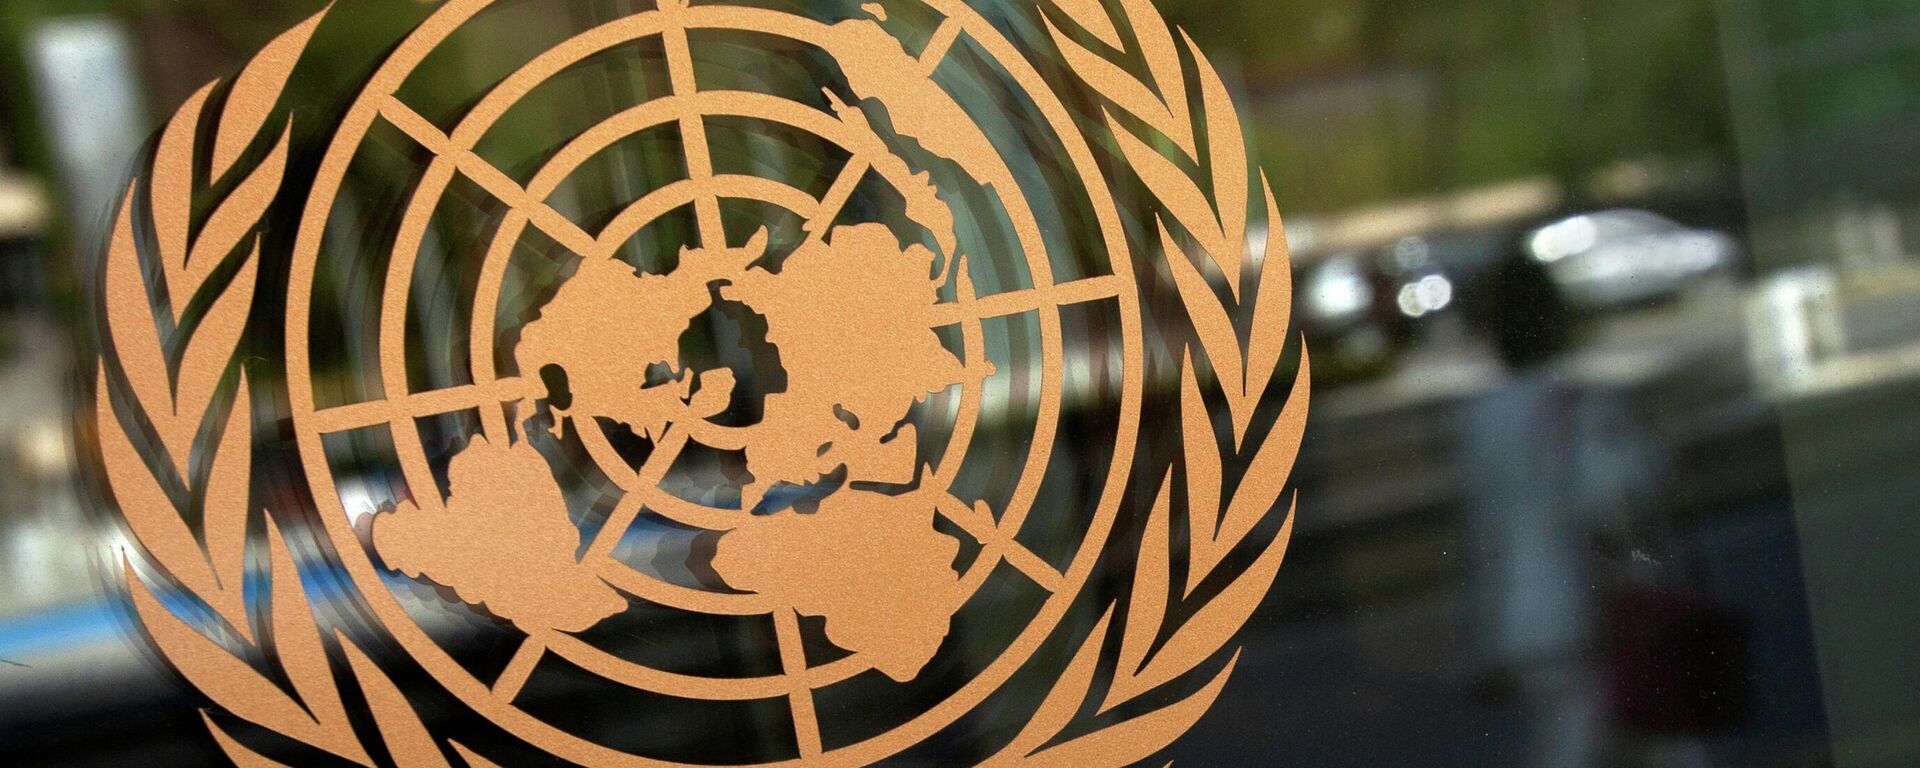 El logo de la ONU - Sputnik Mundo, 1920, 27.10.2021